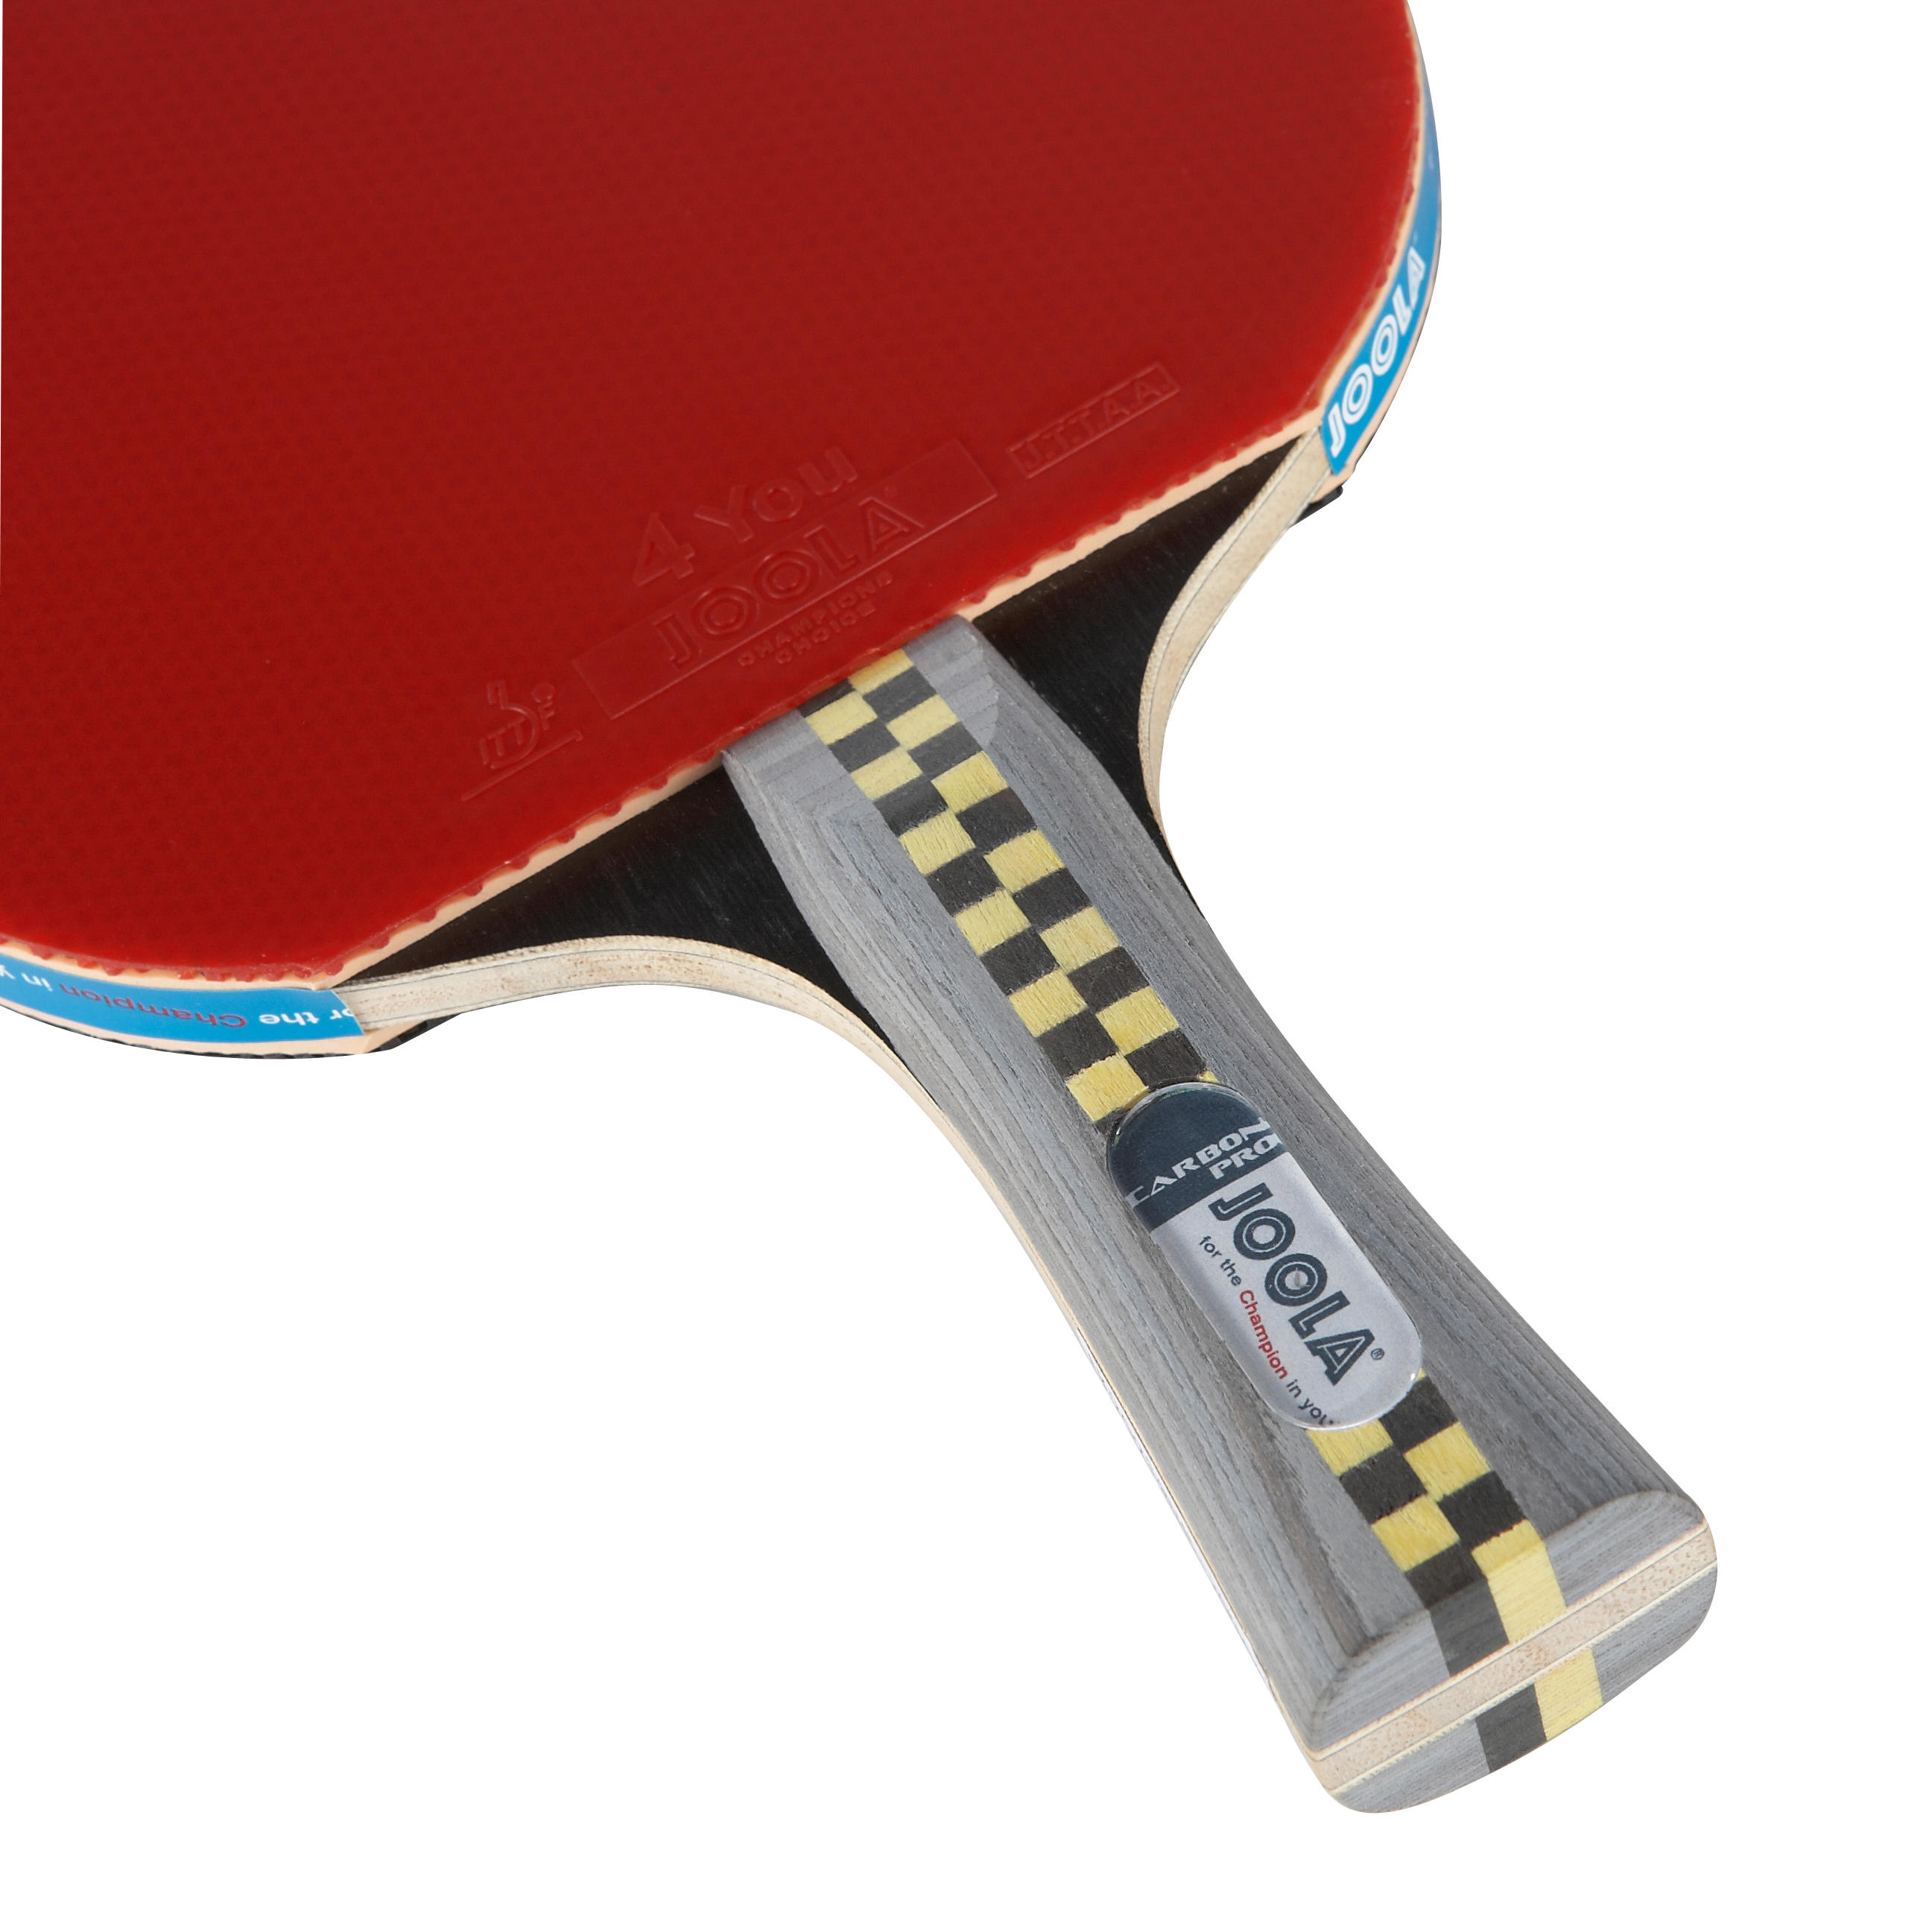 Накладки для настольного тенниса какие. Joola ракетки для настольного тенниса Carbon Pro. Ракетка для настольного тенниса Joola Carbon x Pro 7*. Ракетка Joola Steffen Fetzner для настольного тенниса. Ракетка для настольного тенниса Joola Mega Carbon 7*.